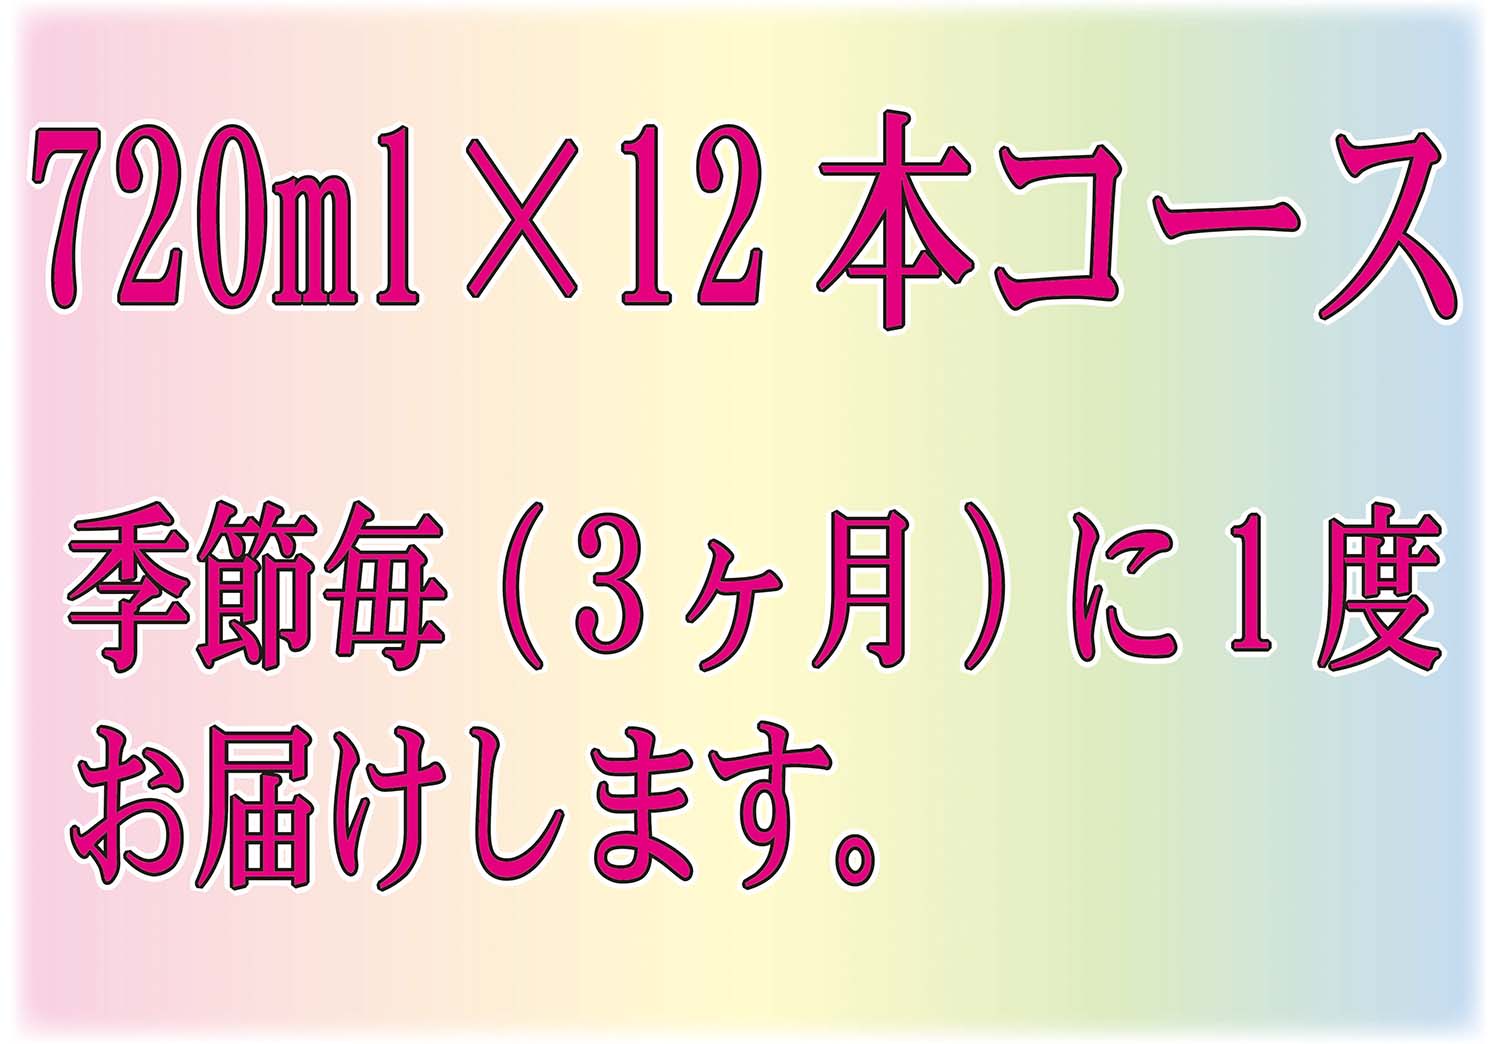 四季の純米定期コース720ml×12本